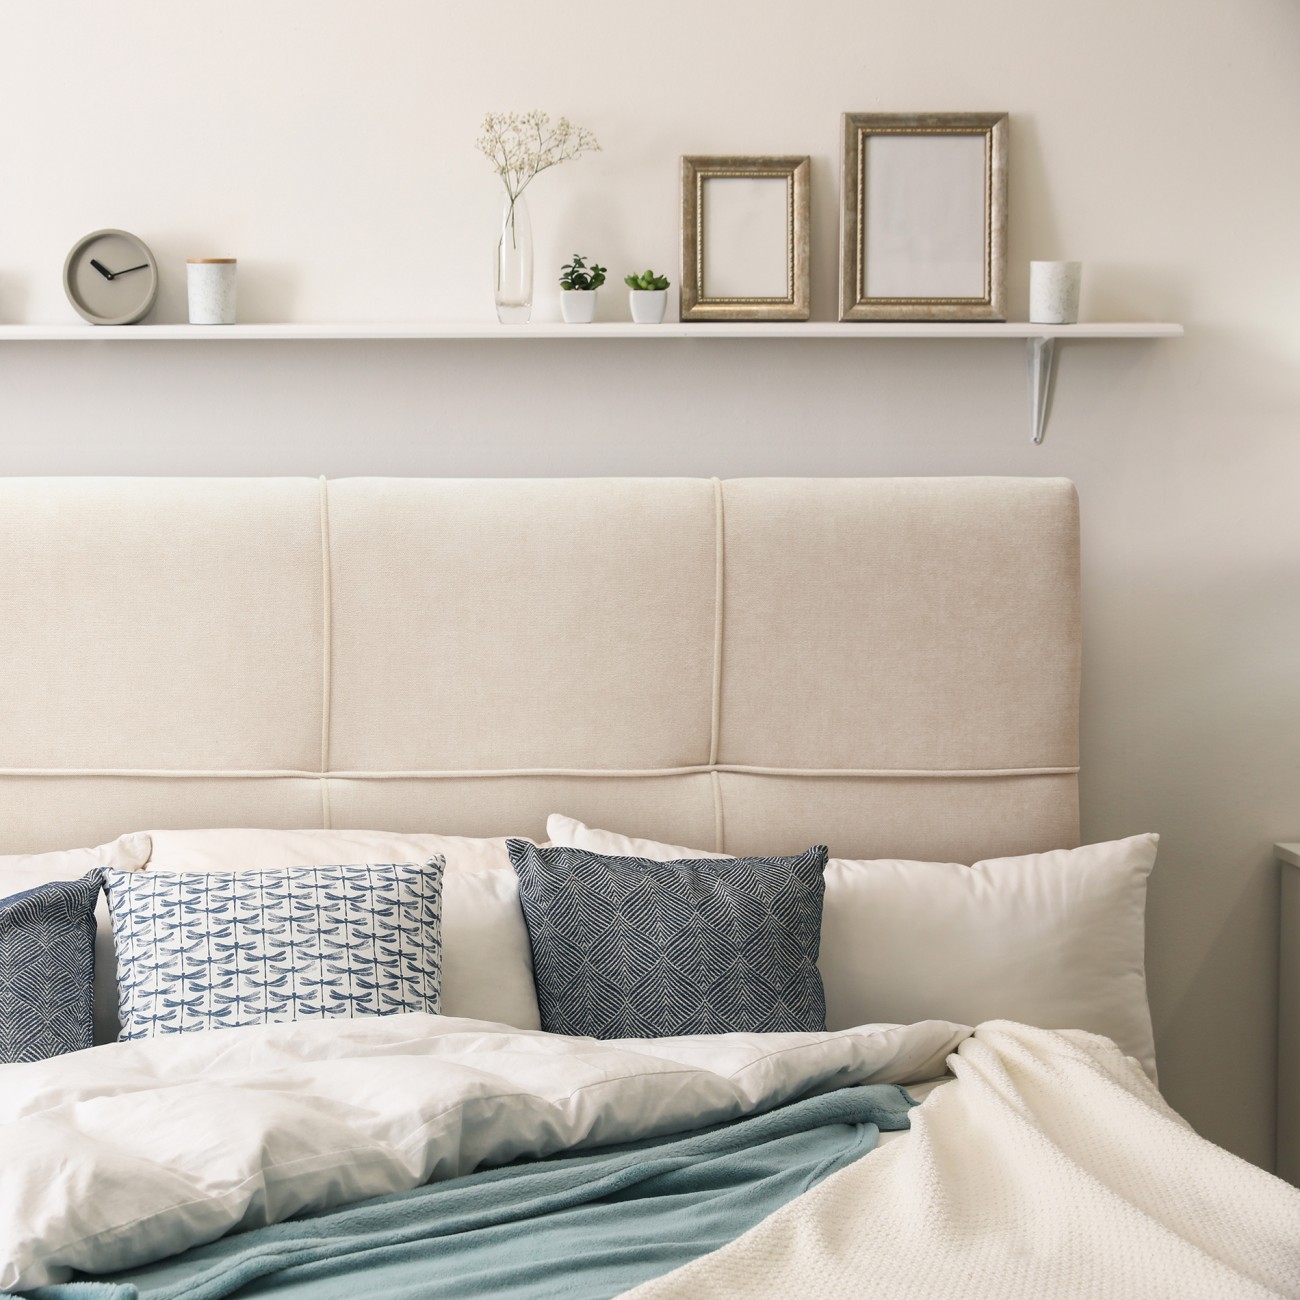 Cabeceros de Cama: Elegancia y Confort para tu Dormitorio